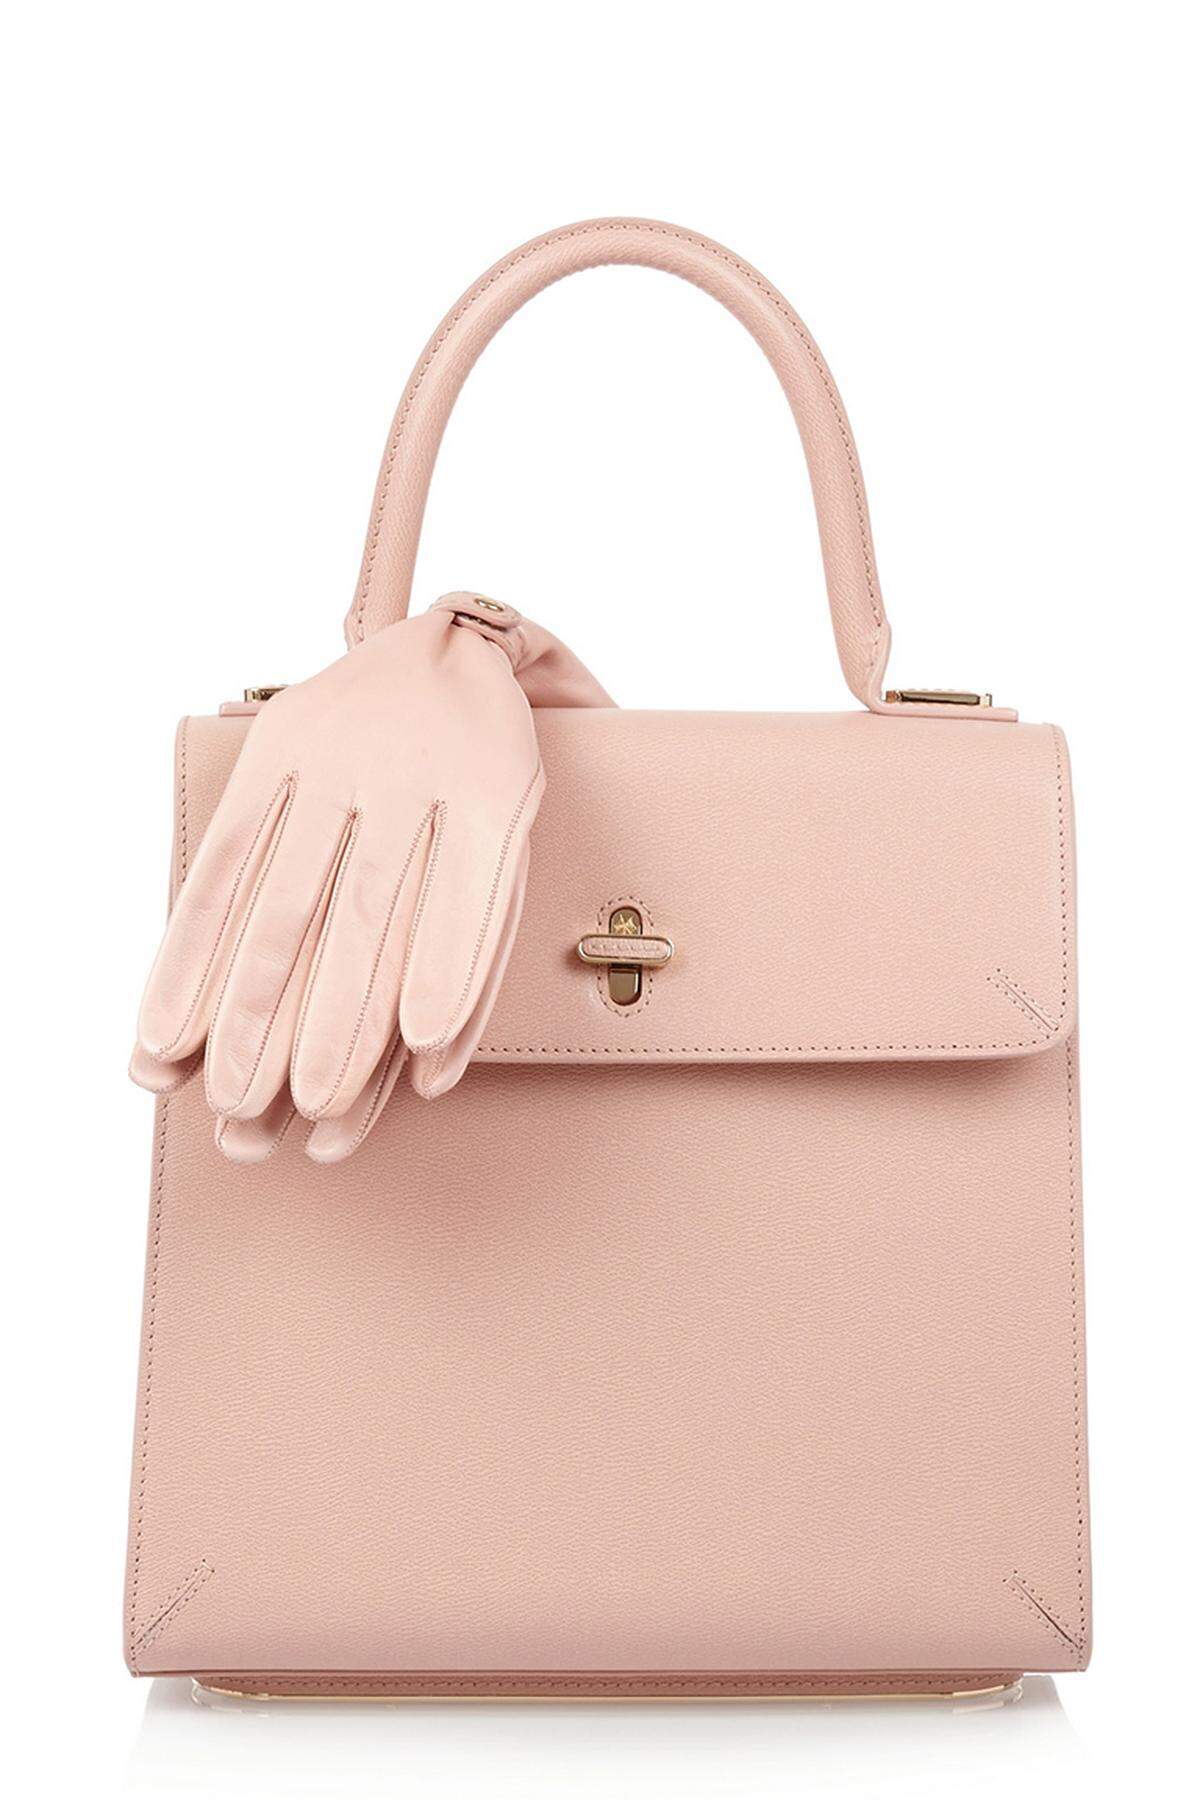 Die "Bogart" von Charlotte Olympia ist die Tasche für den täglichen Gebrauch. Zudem kommt noch ein Paar Handschuhe, ein Kamm und ein goldener Beutel dazu.